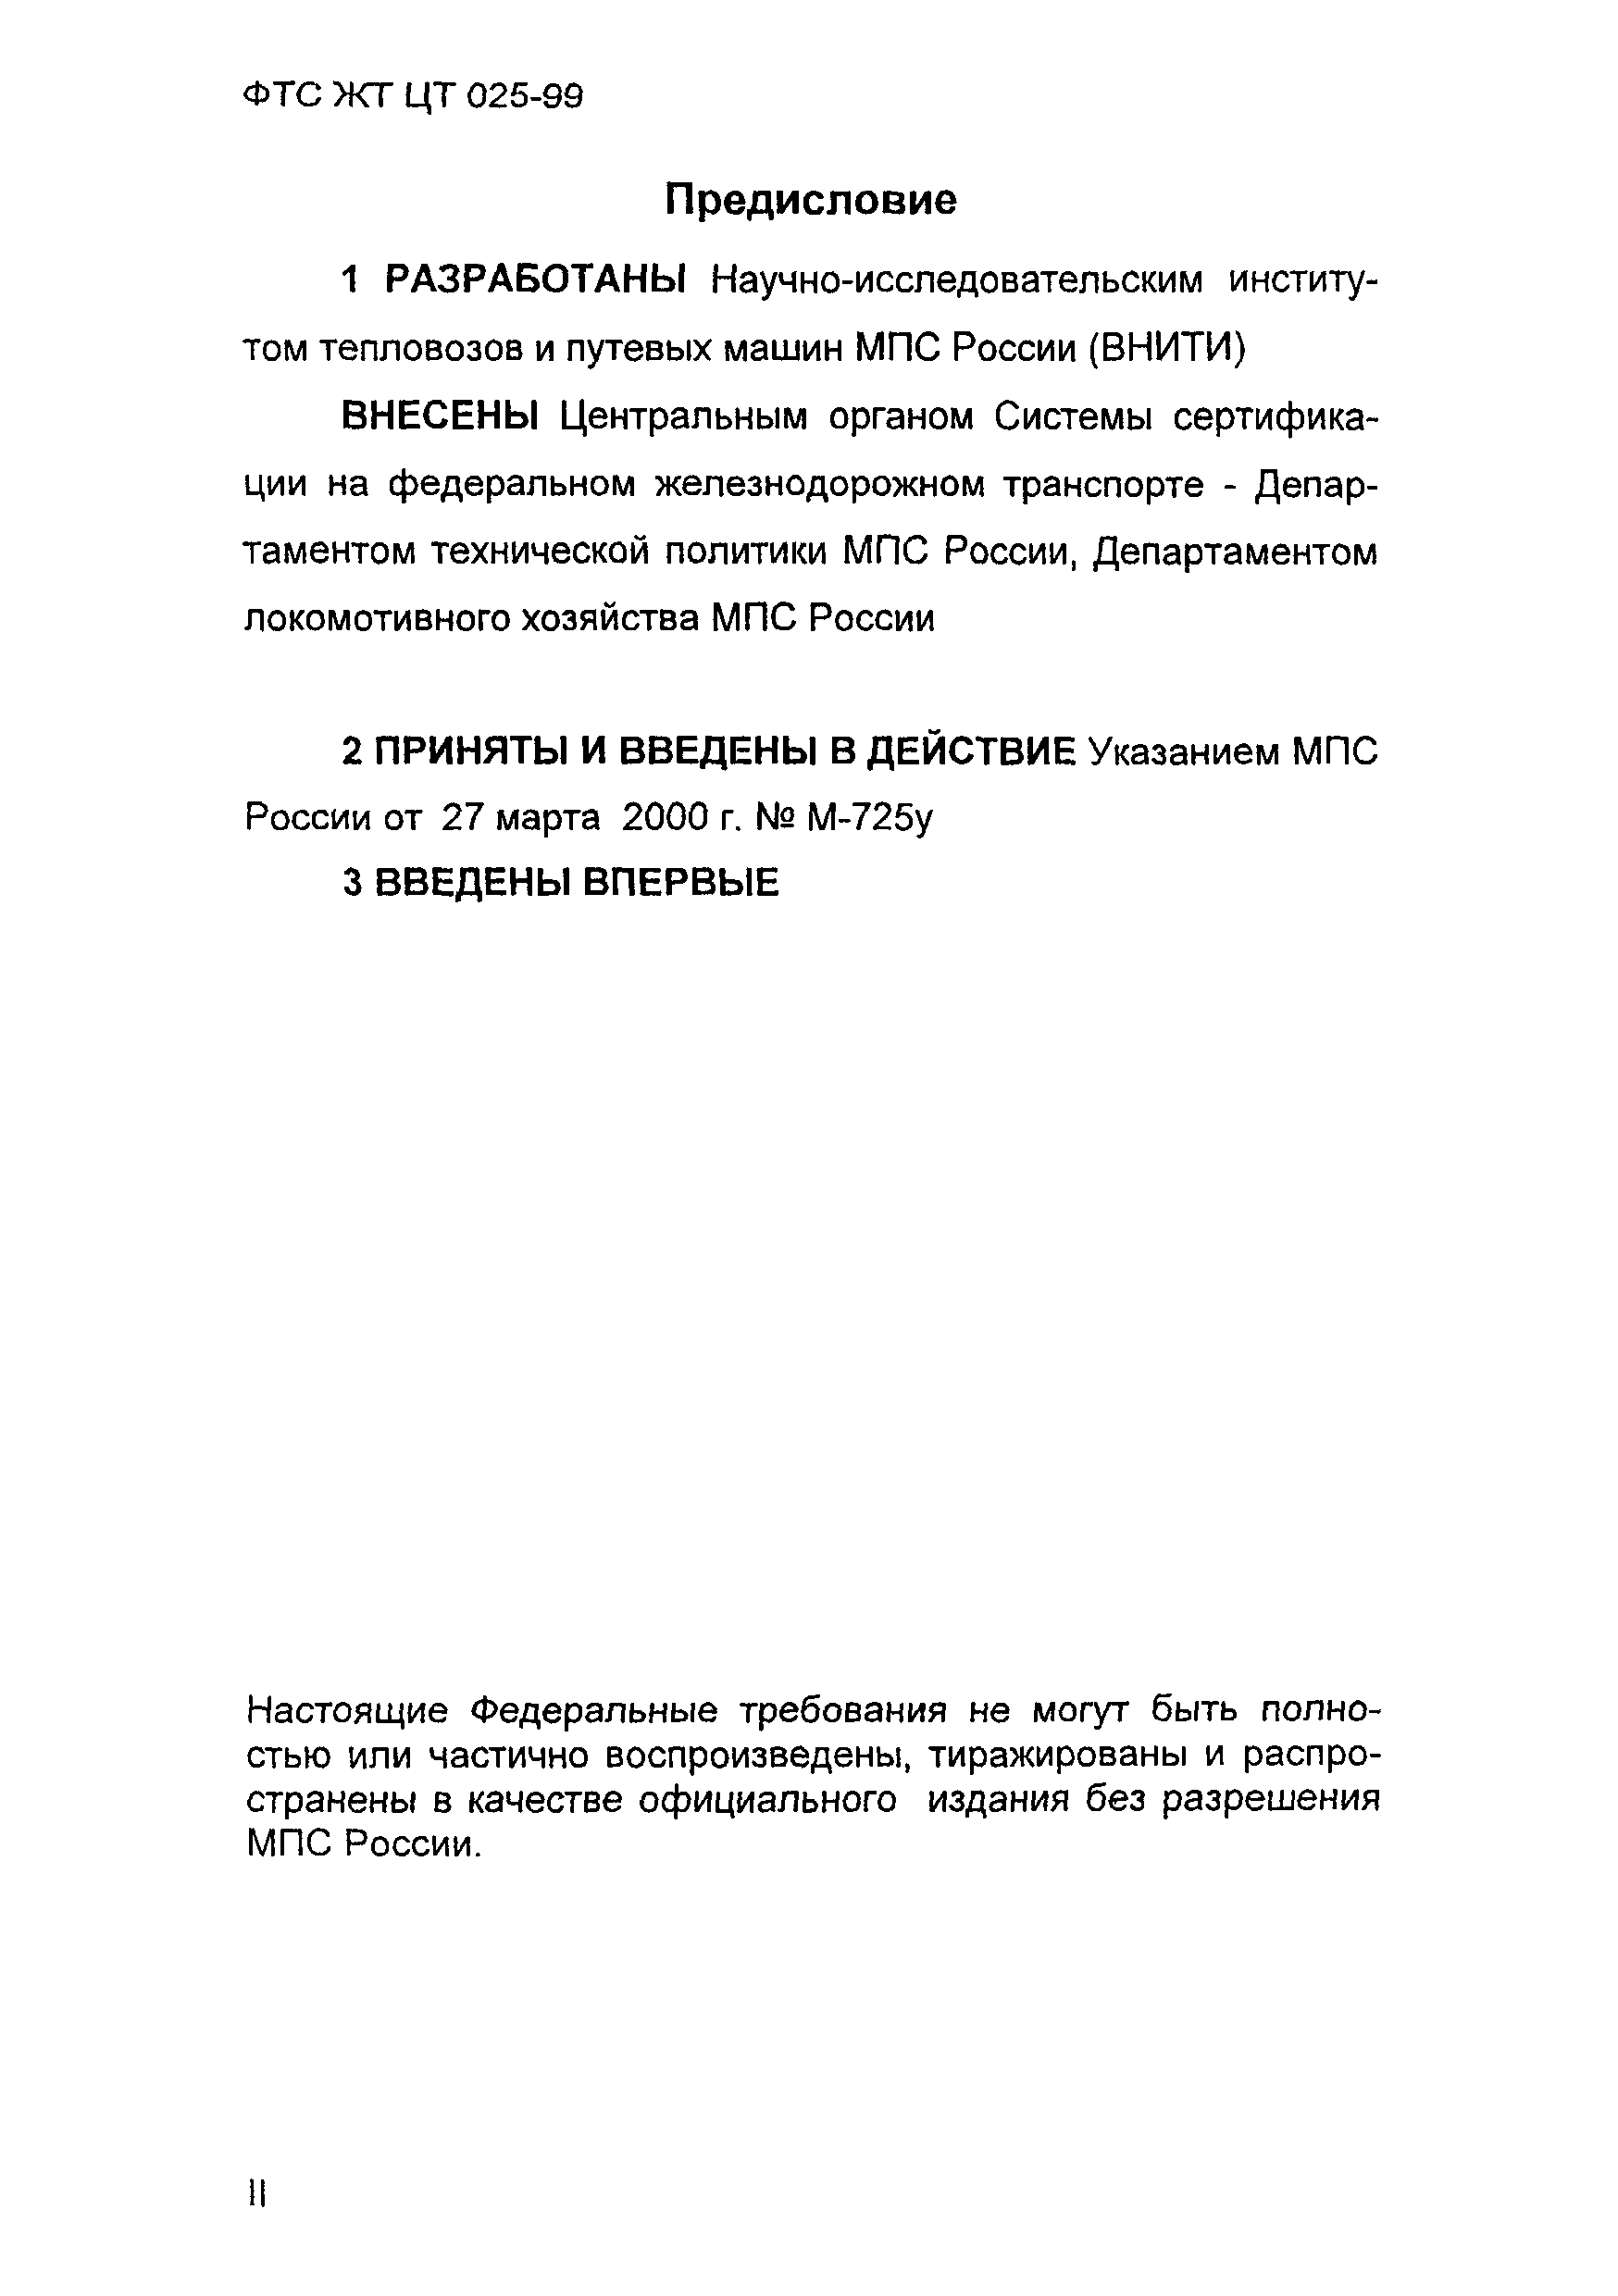 ФТС ЖТ ЦТ 025-99